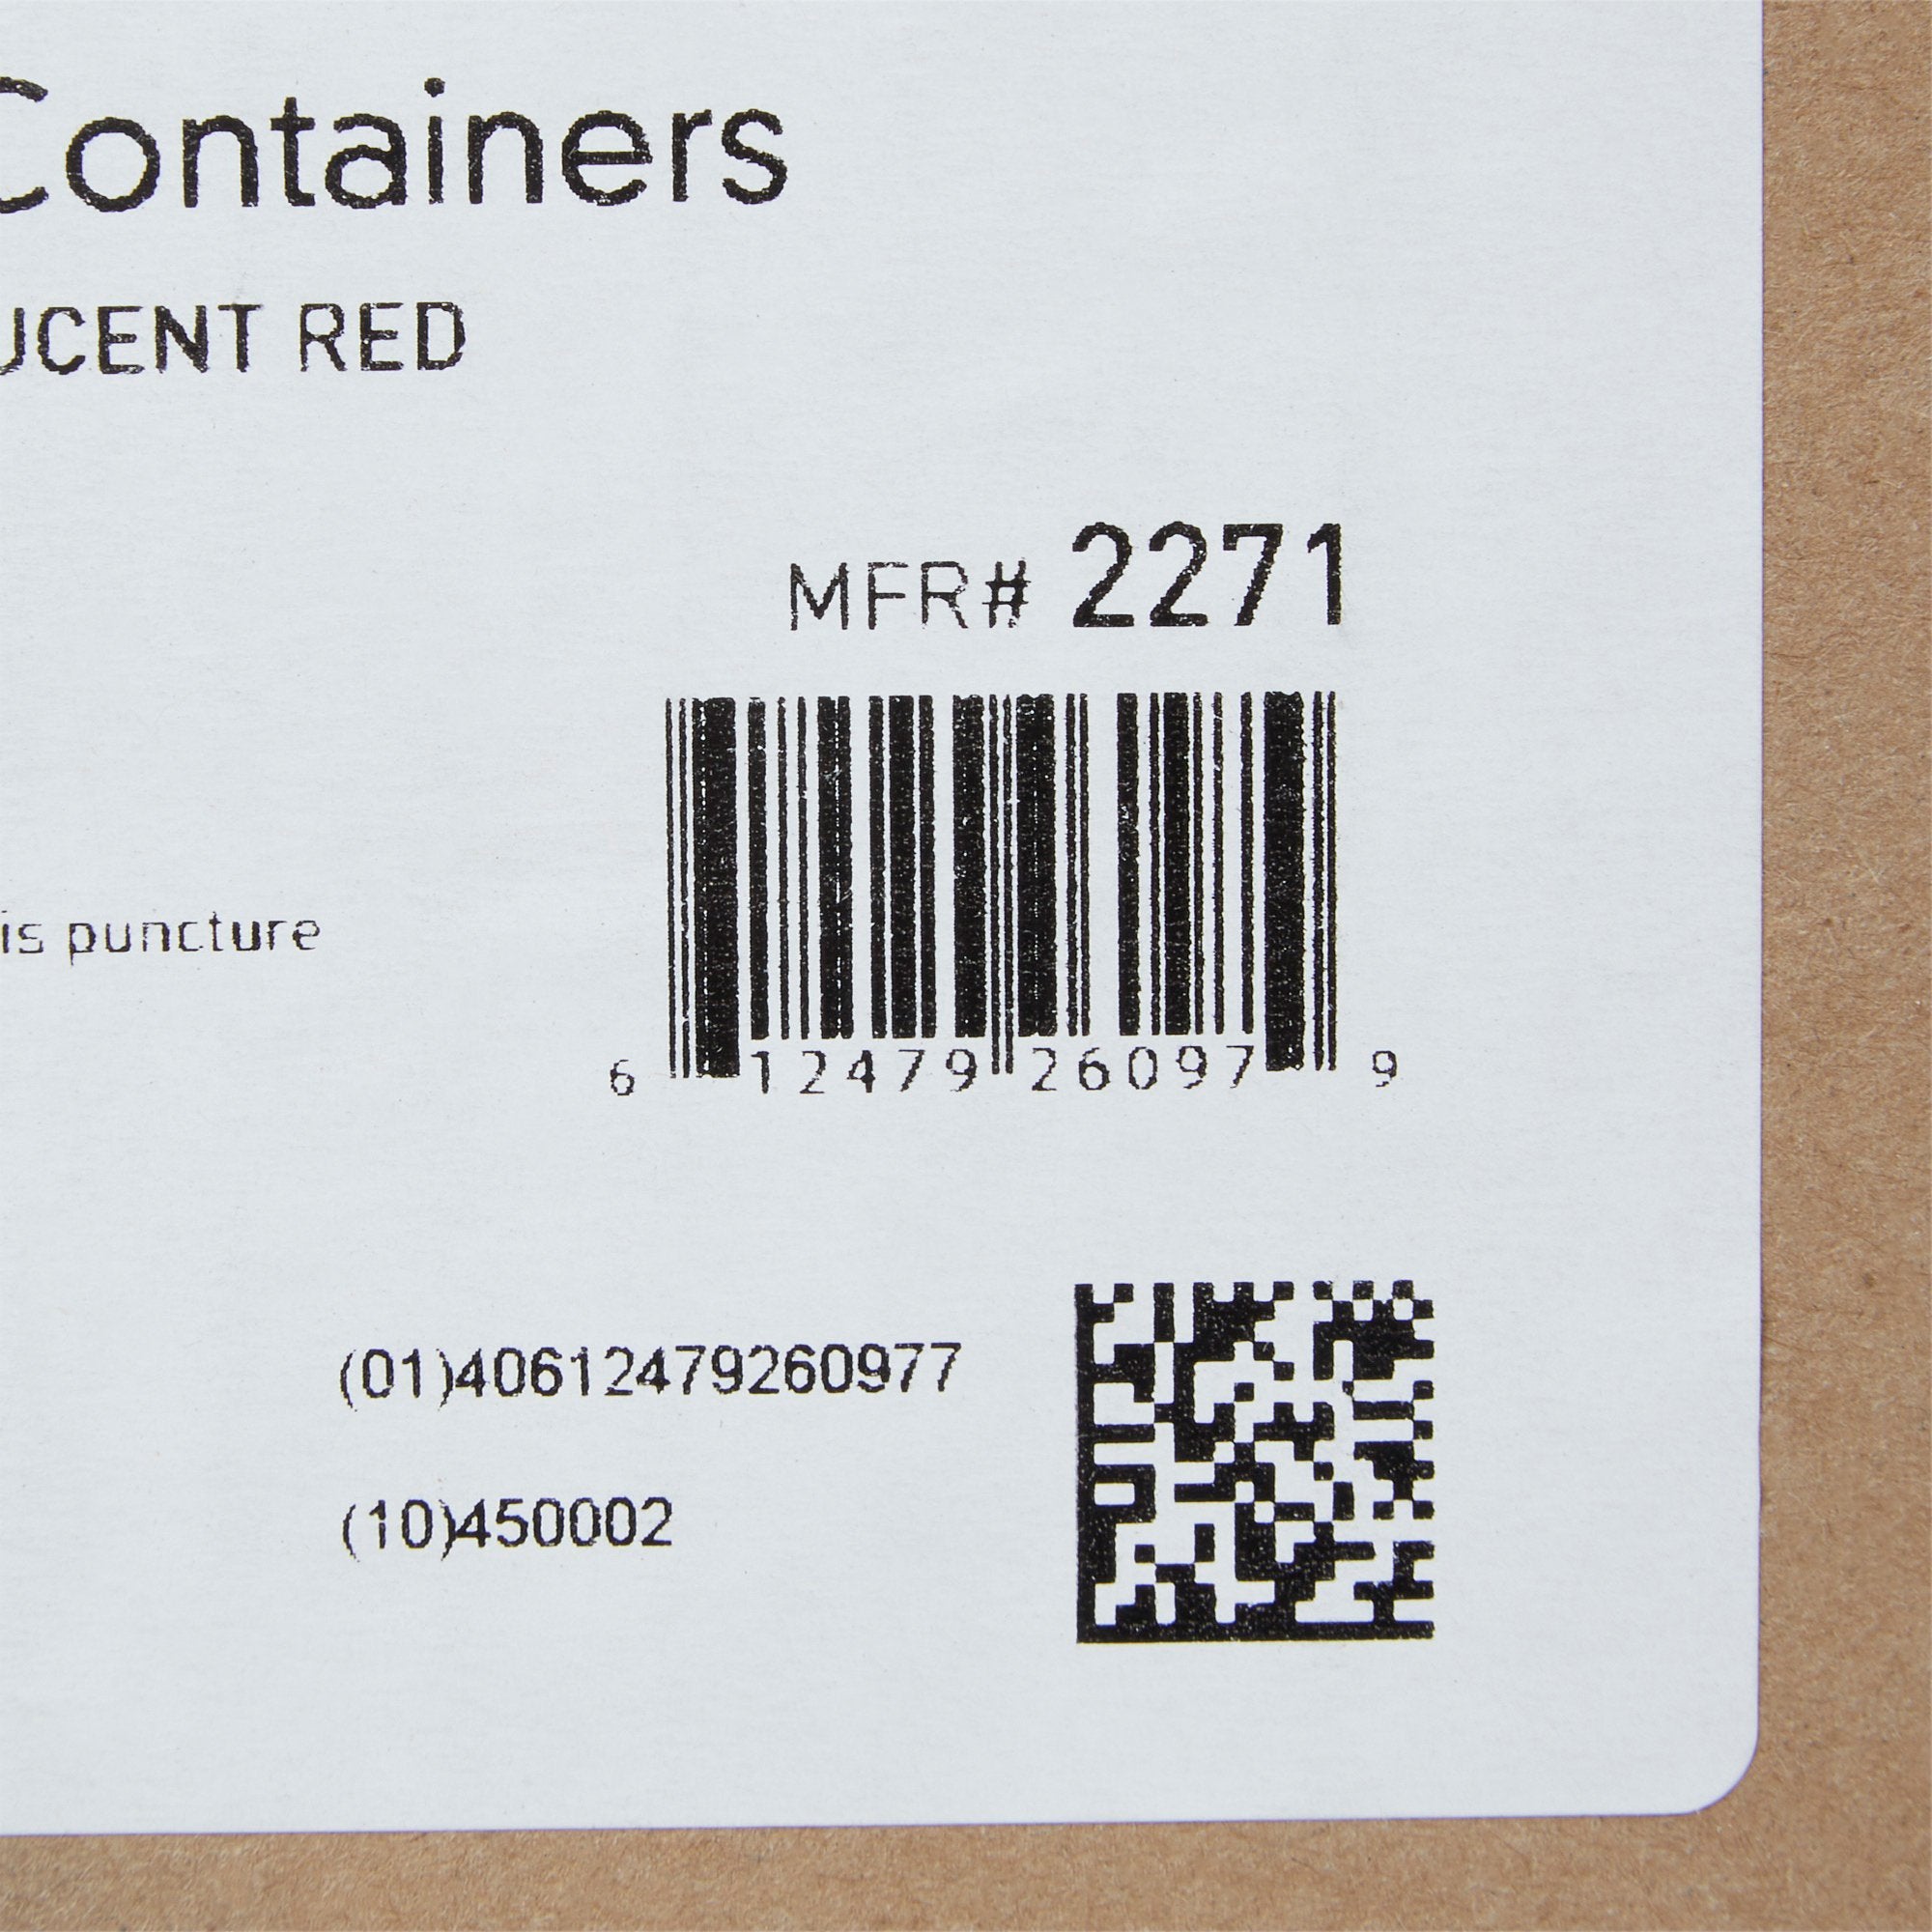 McKesson Prevent® Sharps Container, 2 Gallon, 9-1/4 x 10 x 6 Inch (20 Units)